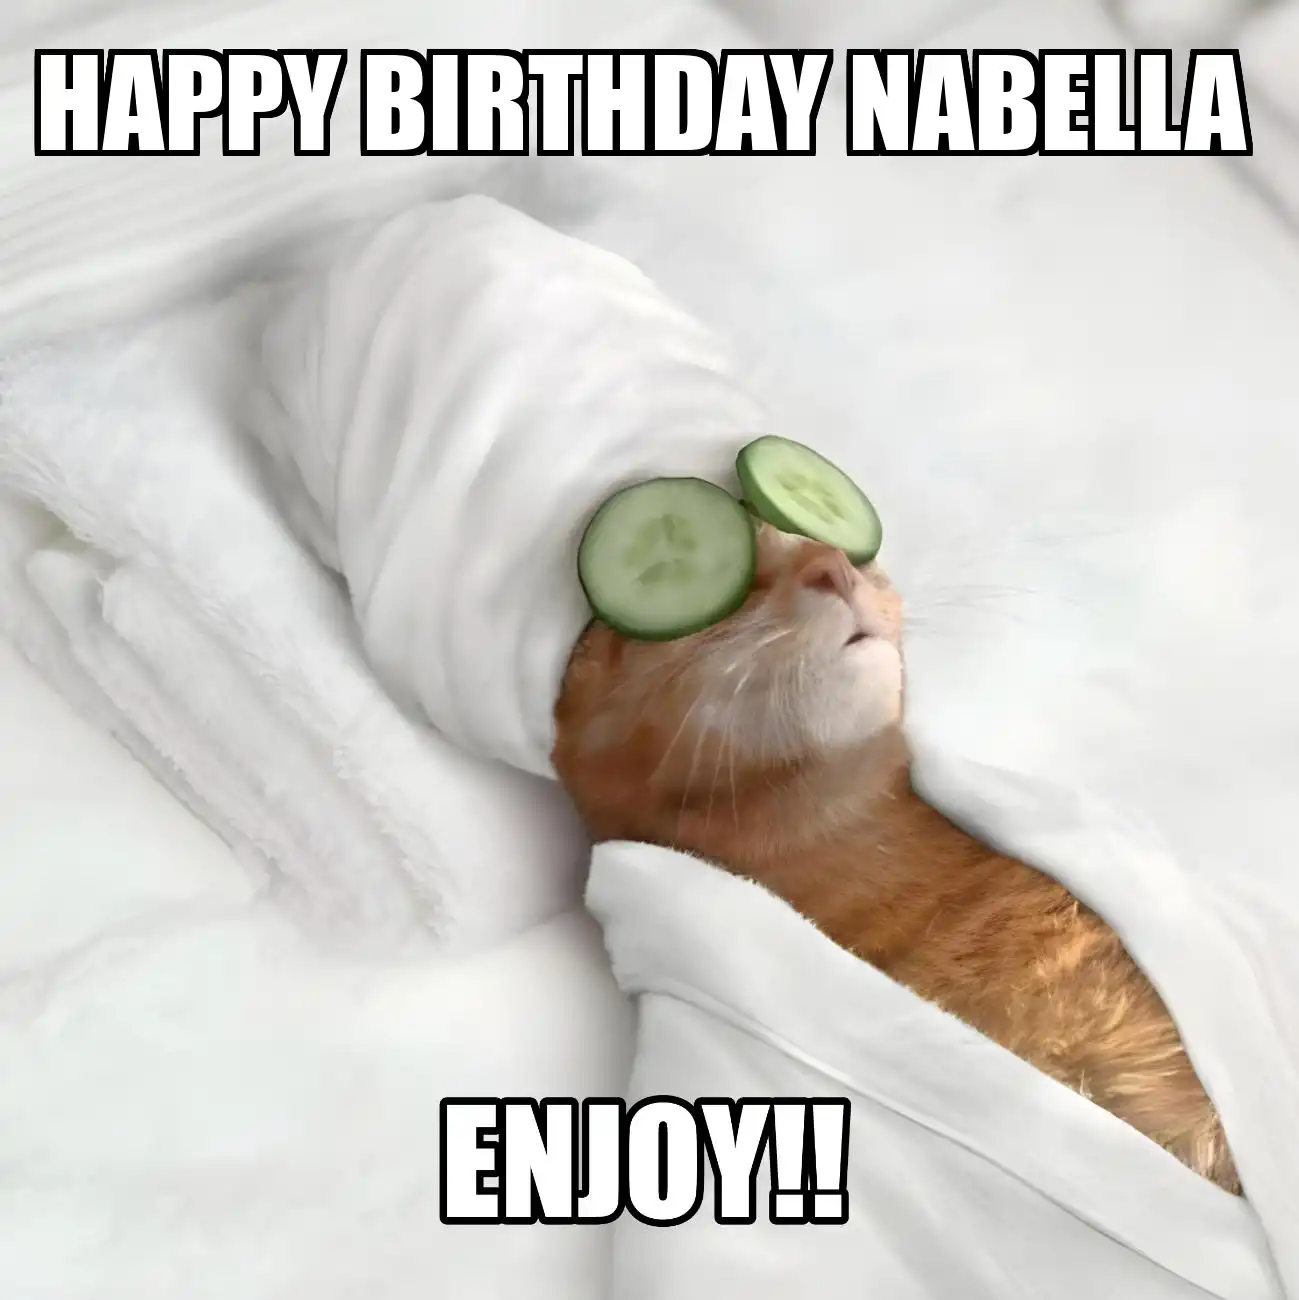 Happy Birthday Nabella Enjoy Cat Meme